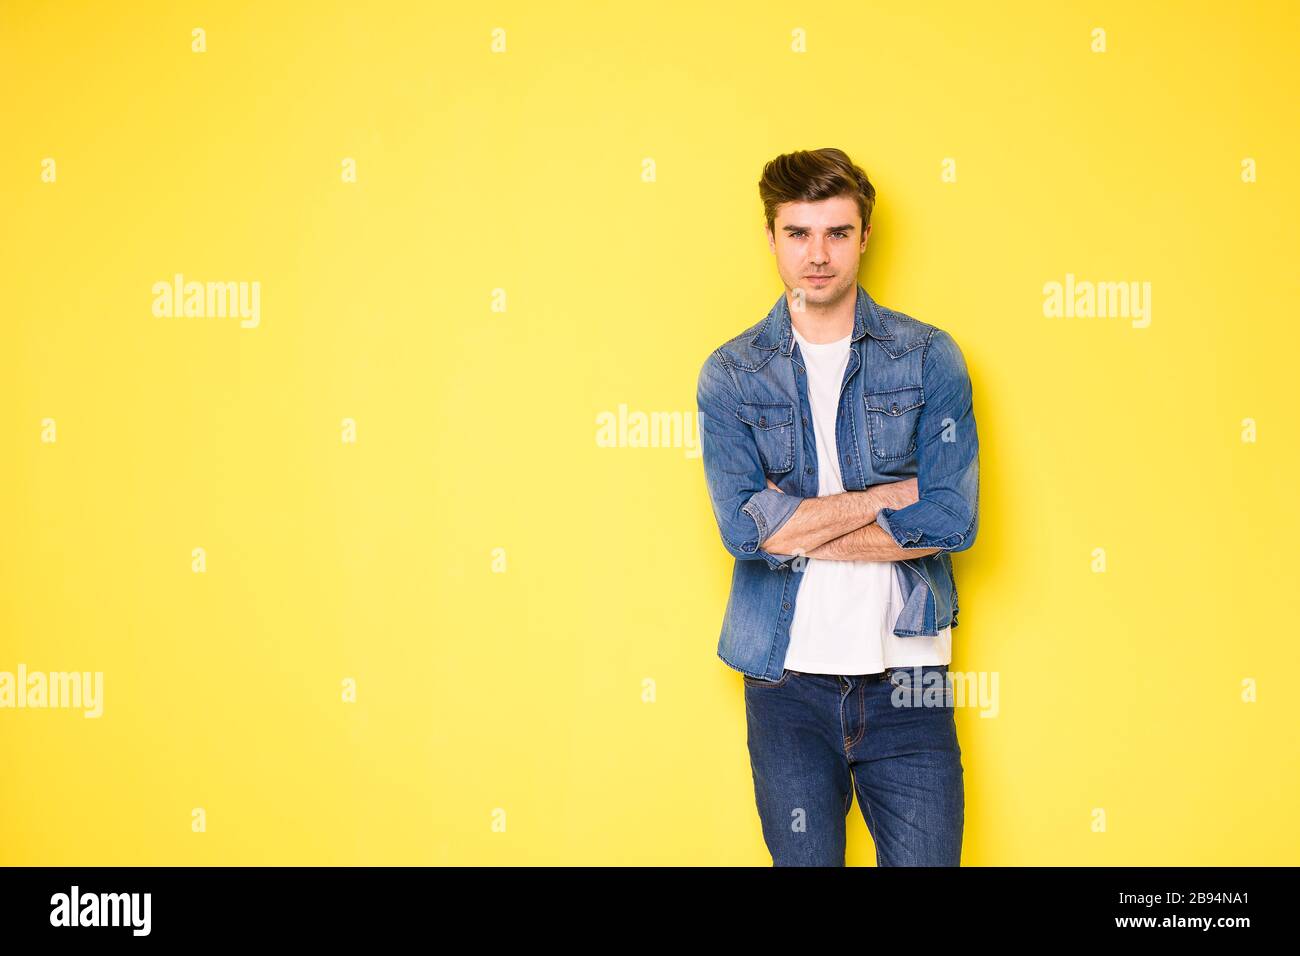 Coole, hübsche junge Männer in Jeans-Outfit, das auf gelbem Hintergrund steht Stockfoto